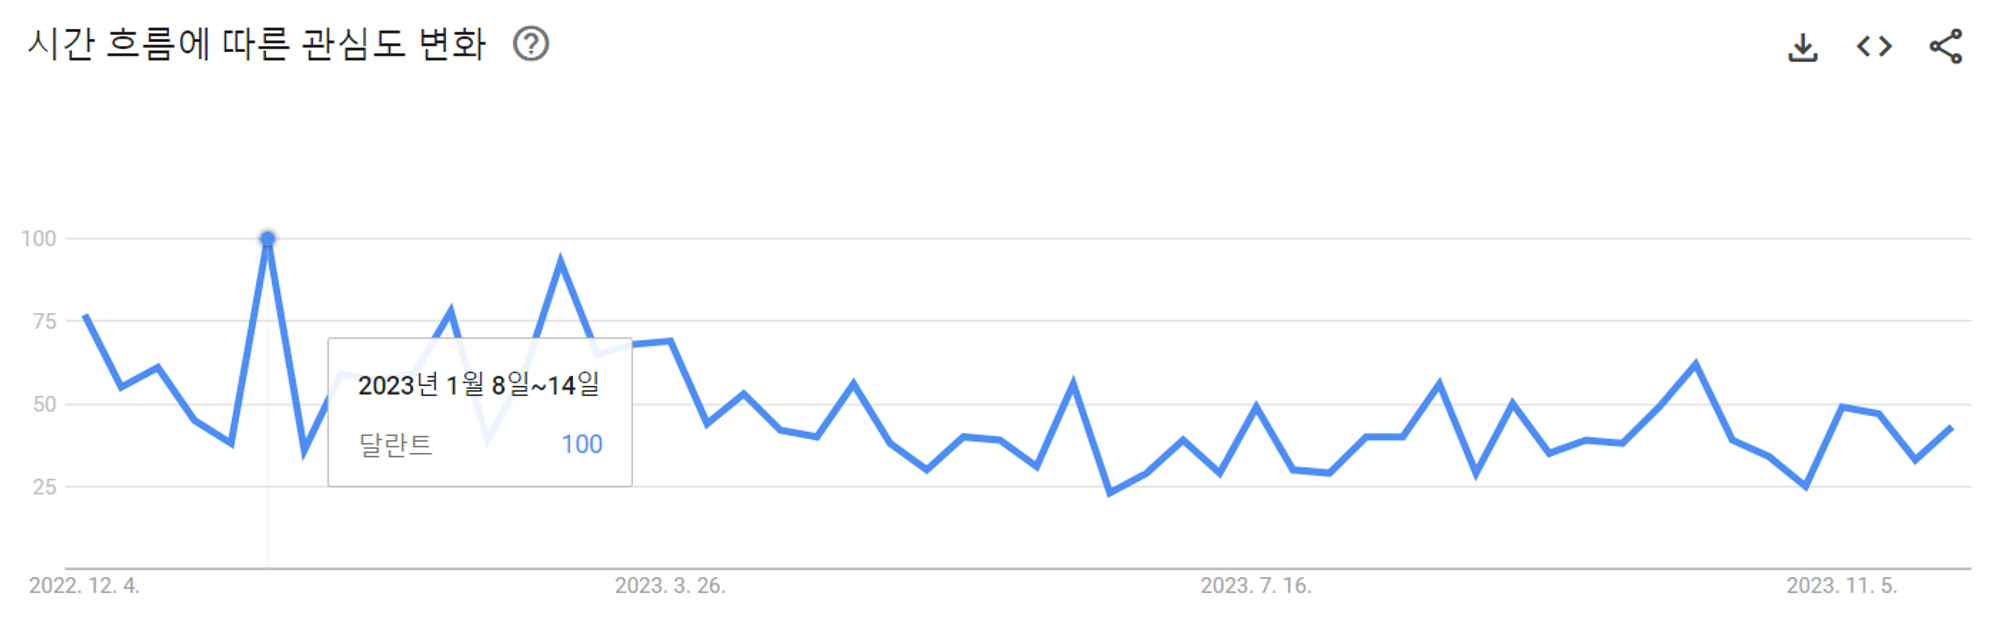 이미지 = 구글 트렌드 ‘달란트’ 검색어 탐색 결과 
(https://trends.google.co.kr/trends/explore?geo=KR&q=달란트&hl=ko)